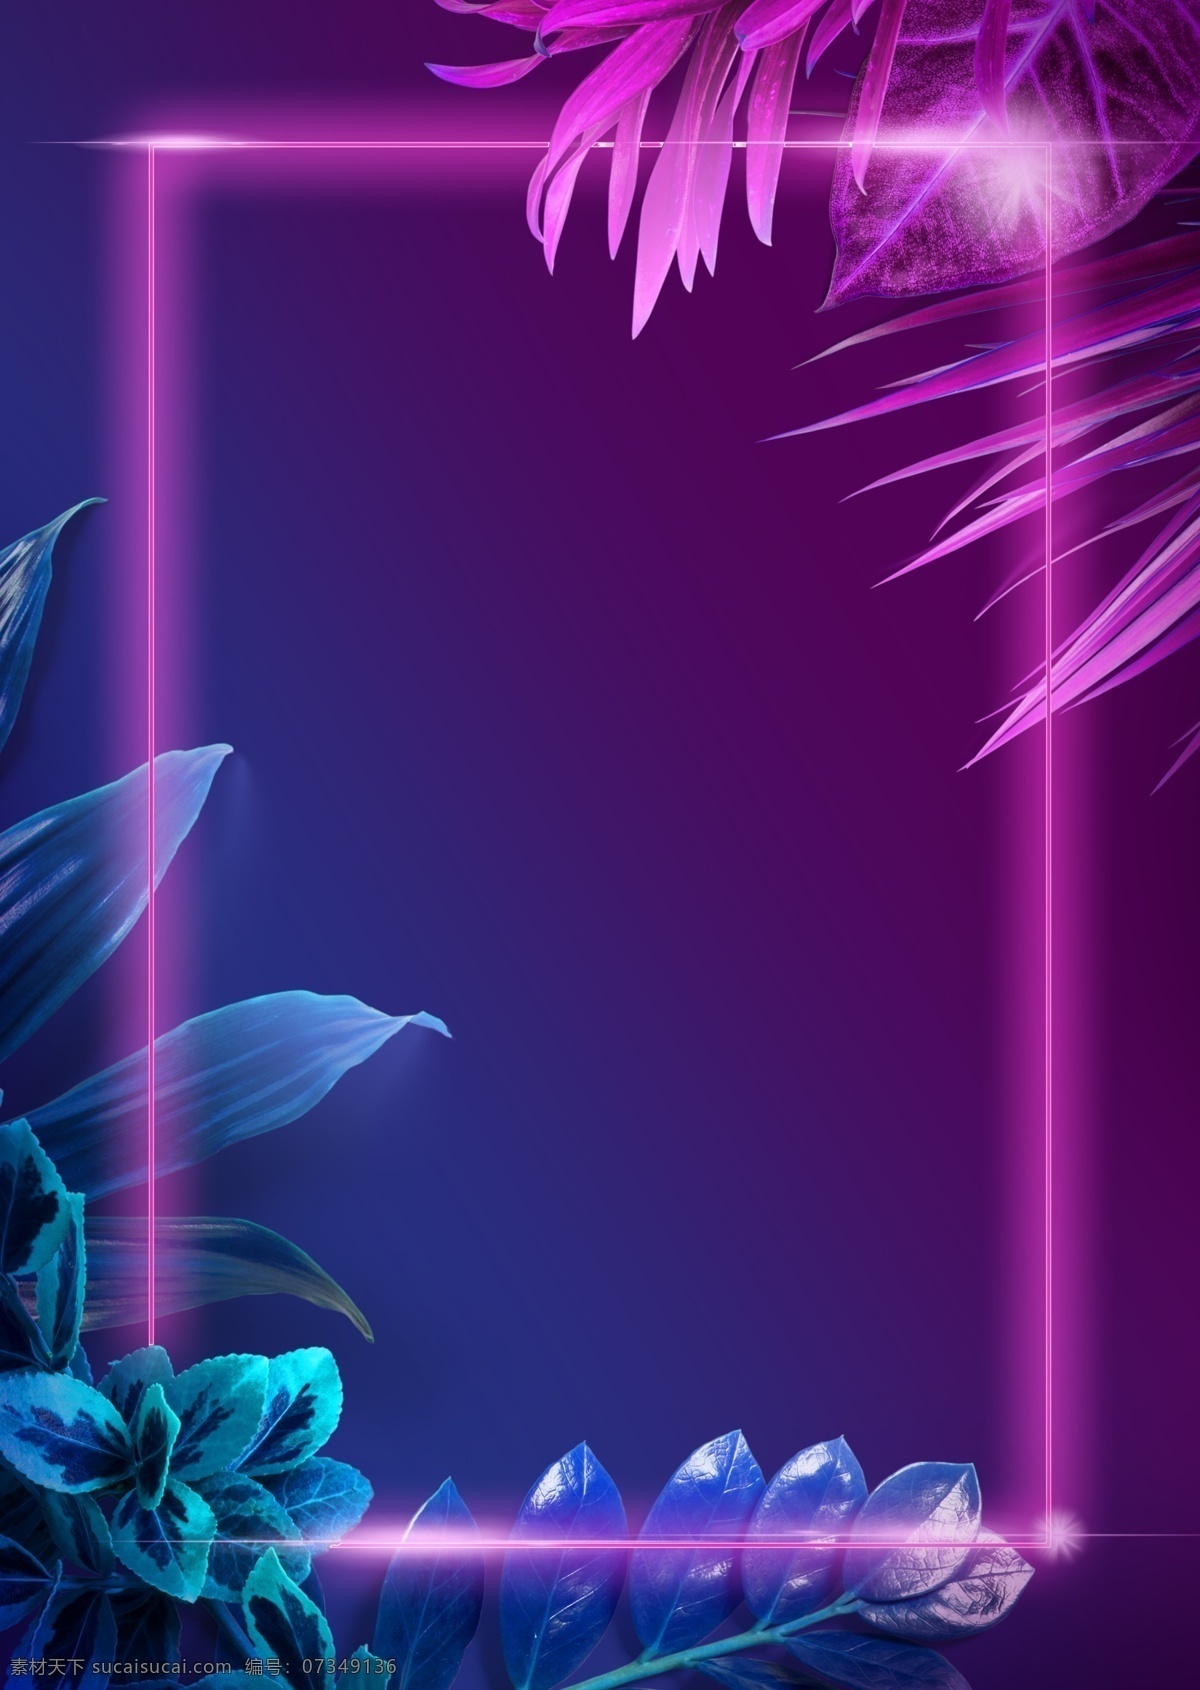 霓虹 发光 热带 植物 方框 光线 背景图片 立体背景 曲线 空间 立体 线条 背景 曲线线条 热带植物 霓虹灯 树叶 紫色 蓝色 花纹 免 抠 图